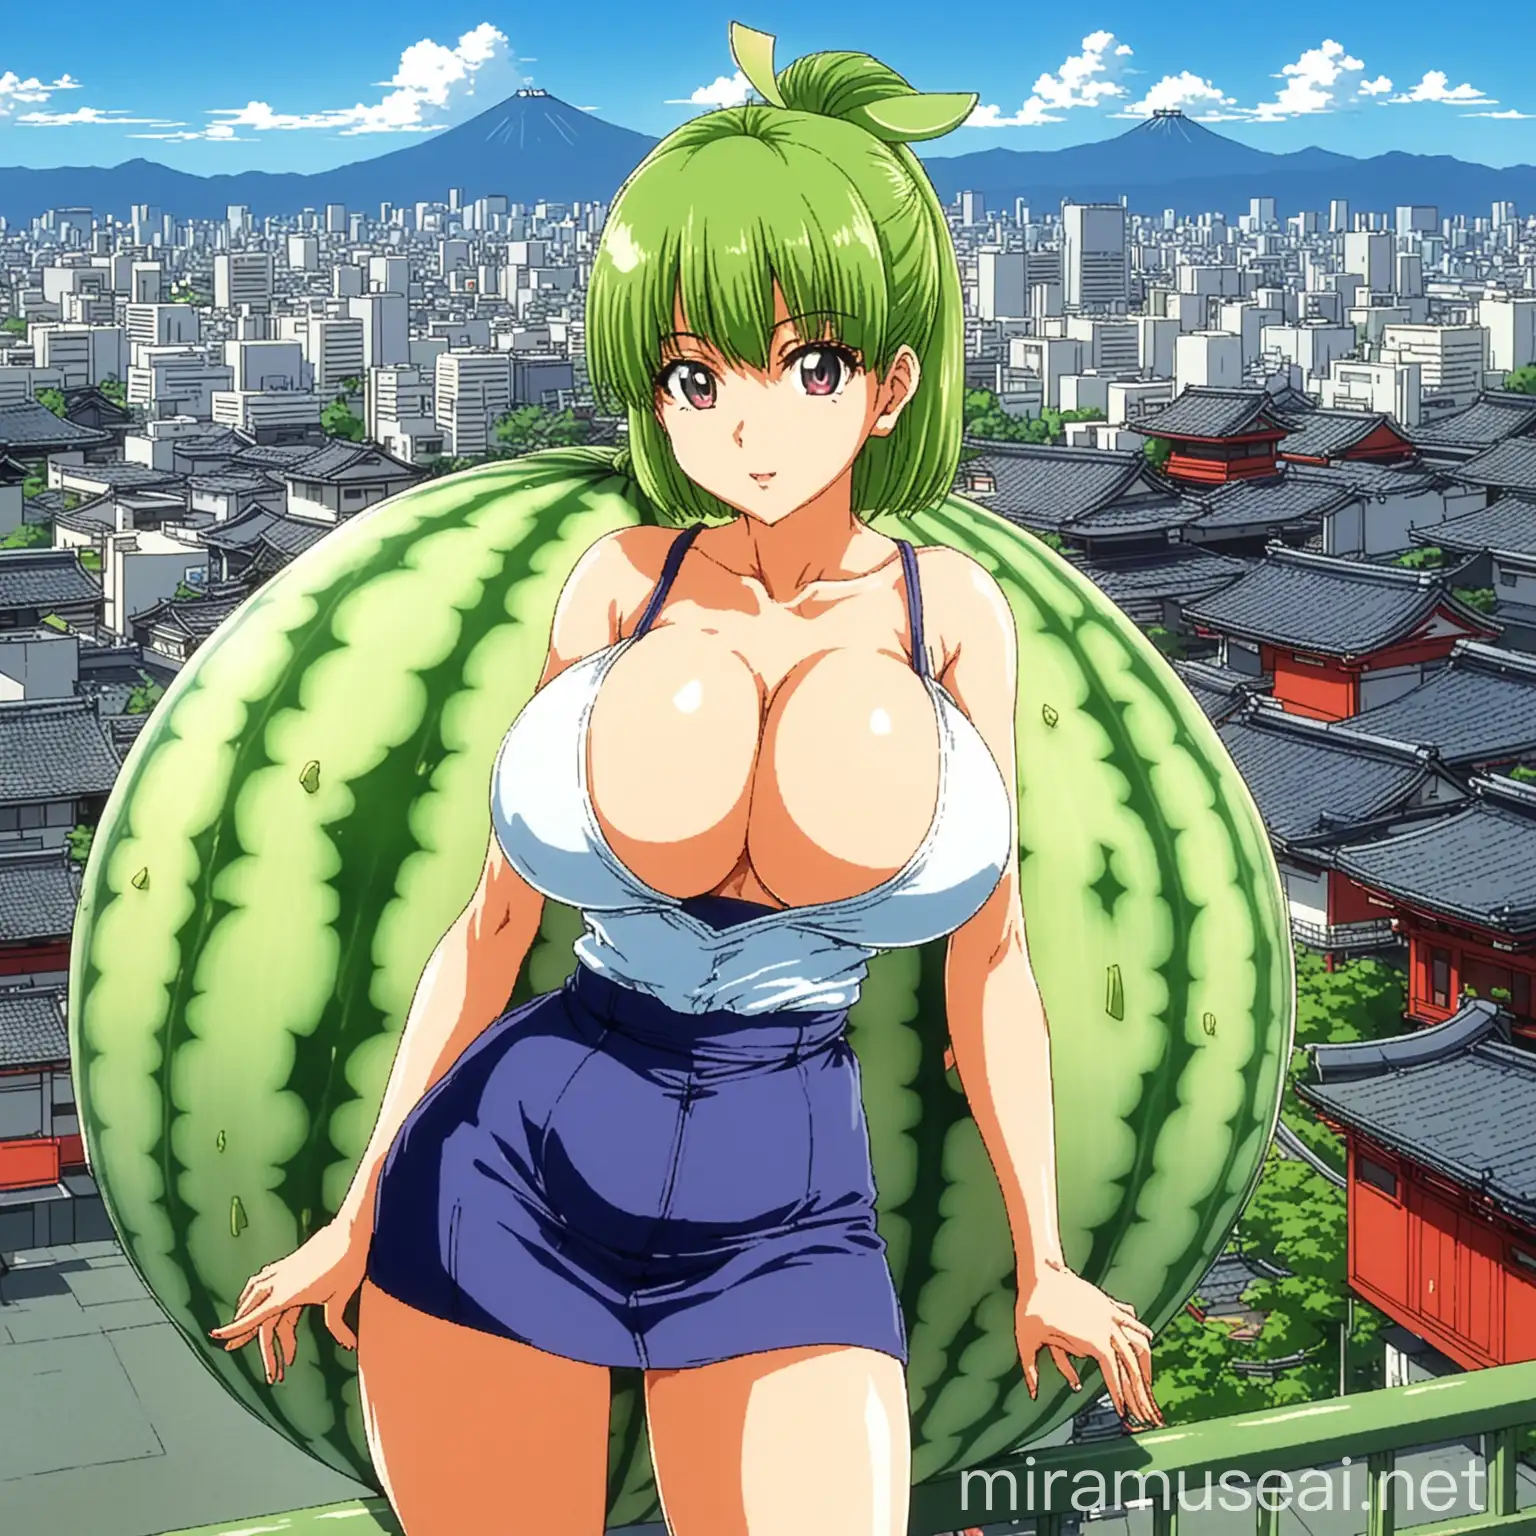 Honeydew Melon Anime Girl in 90s Japanese Cityscape